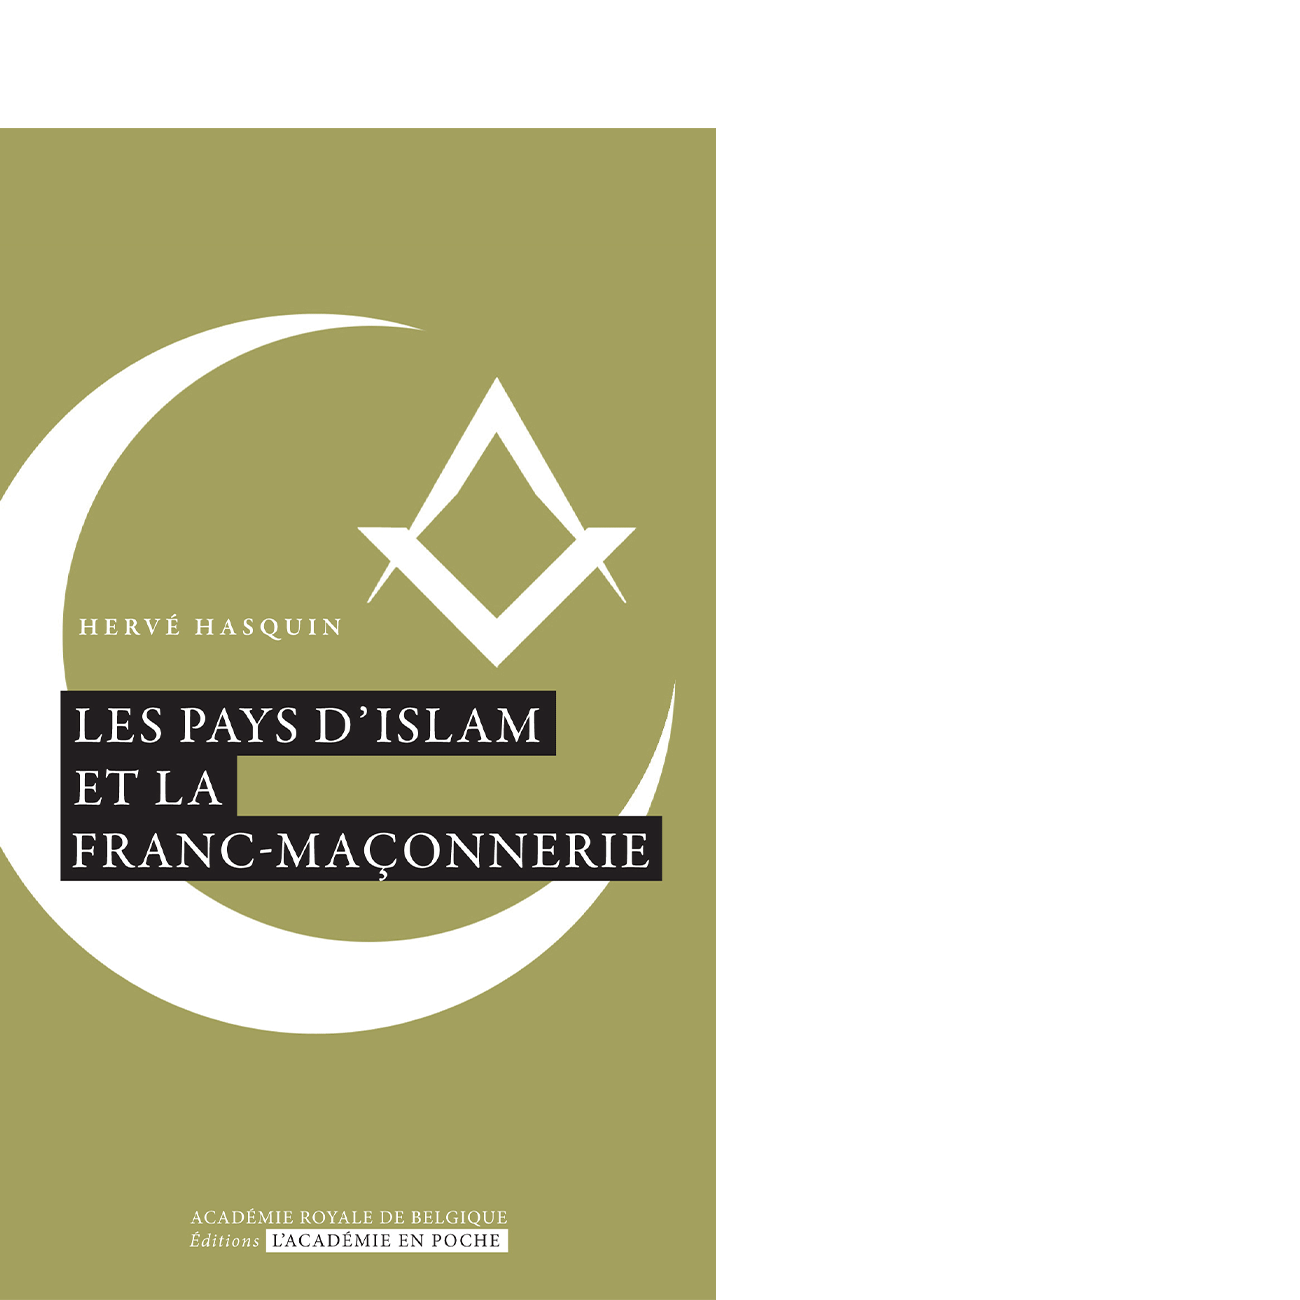 Les pays d'Islam et la Franc-maçonnerie